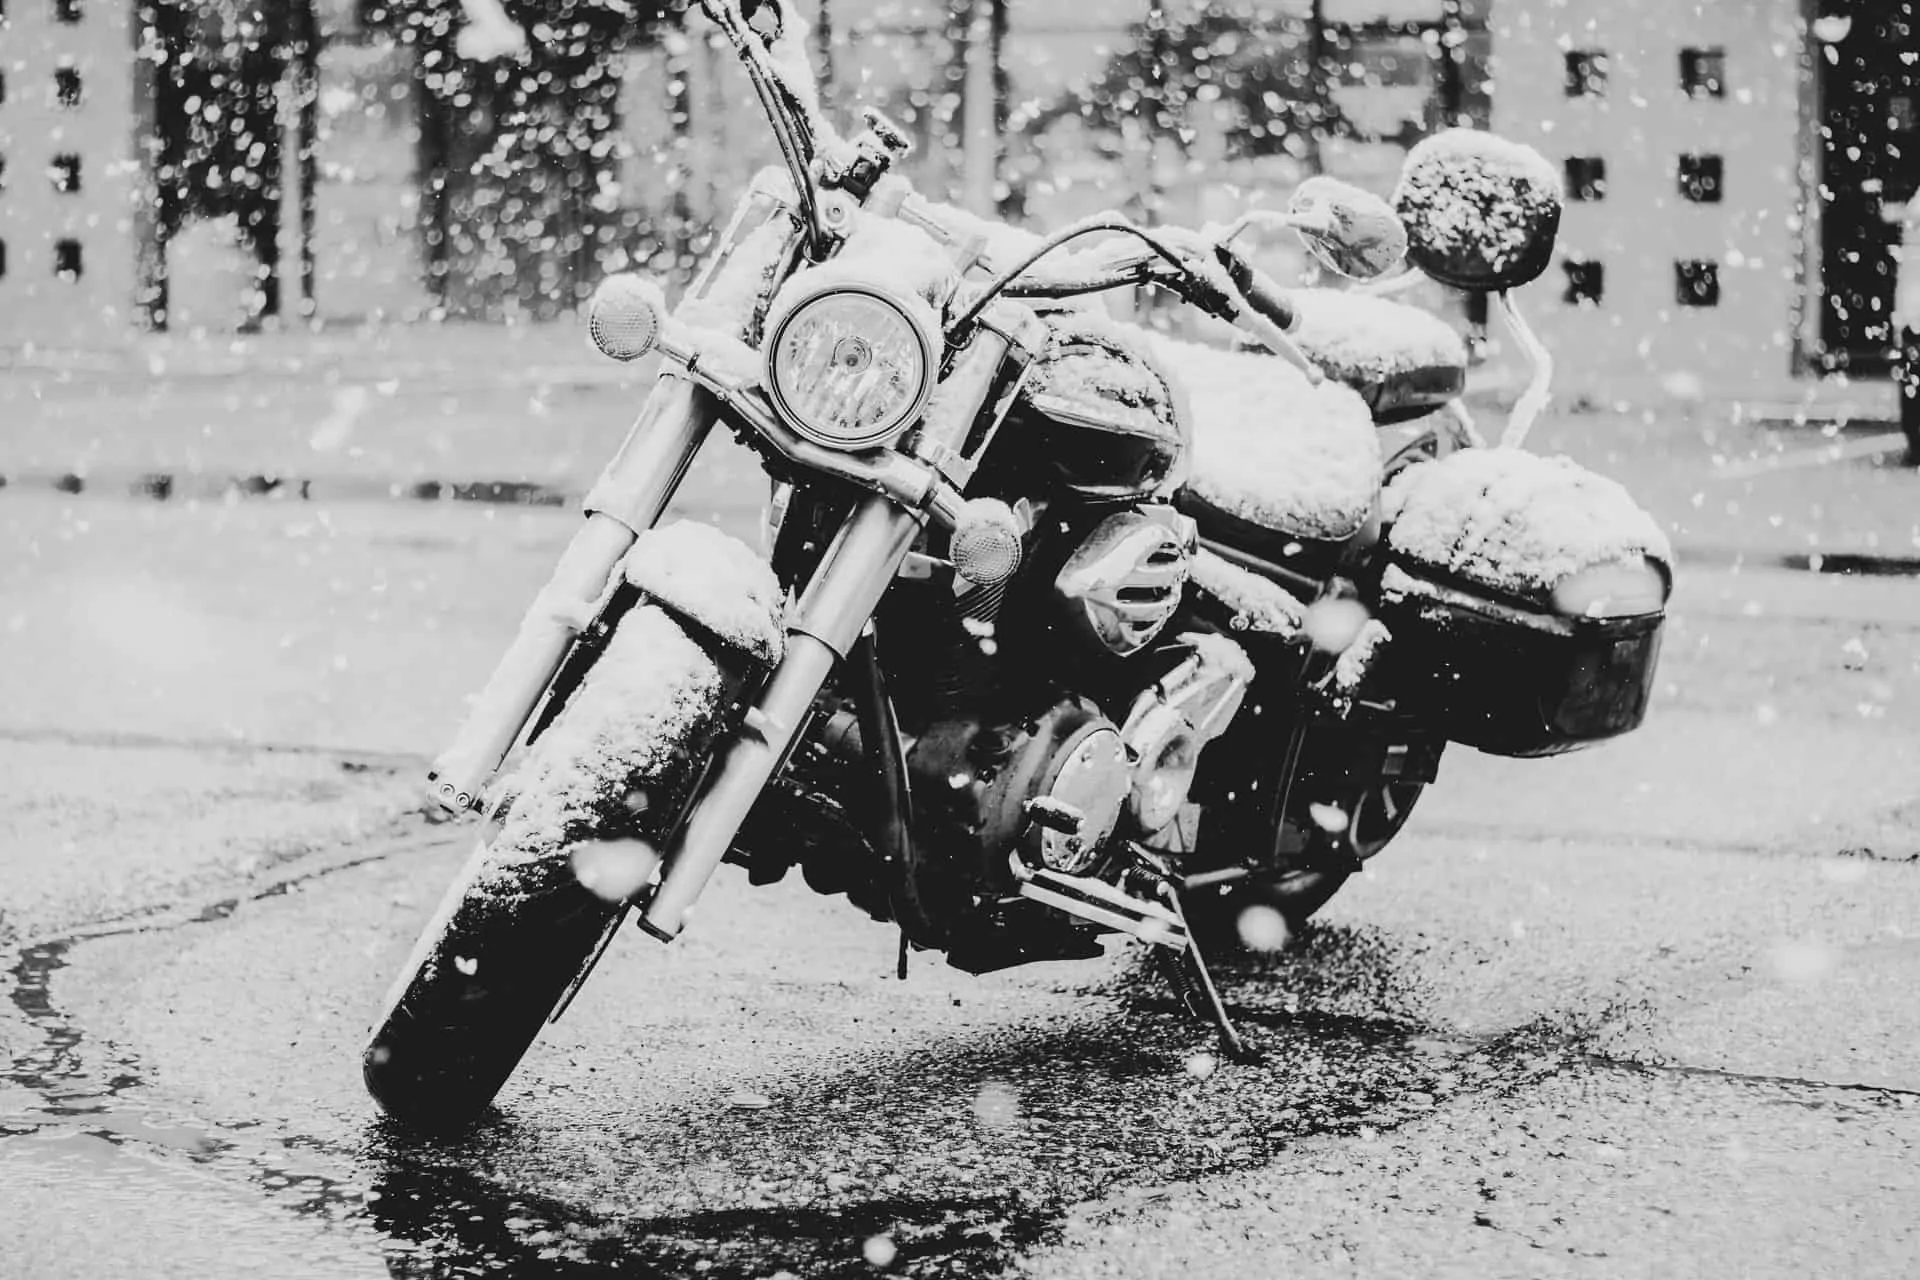 winter motorcycle wet